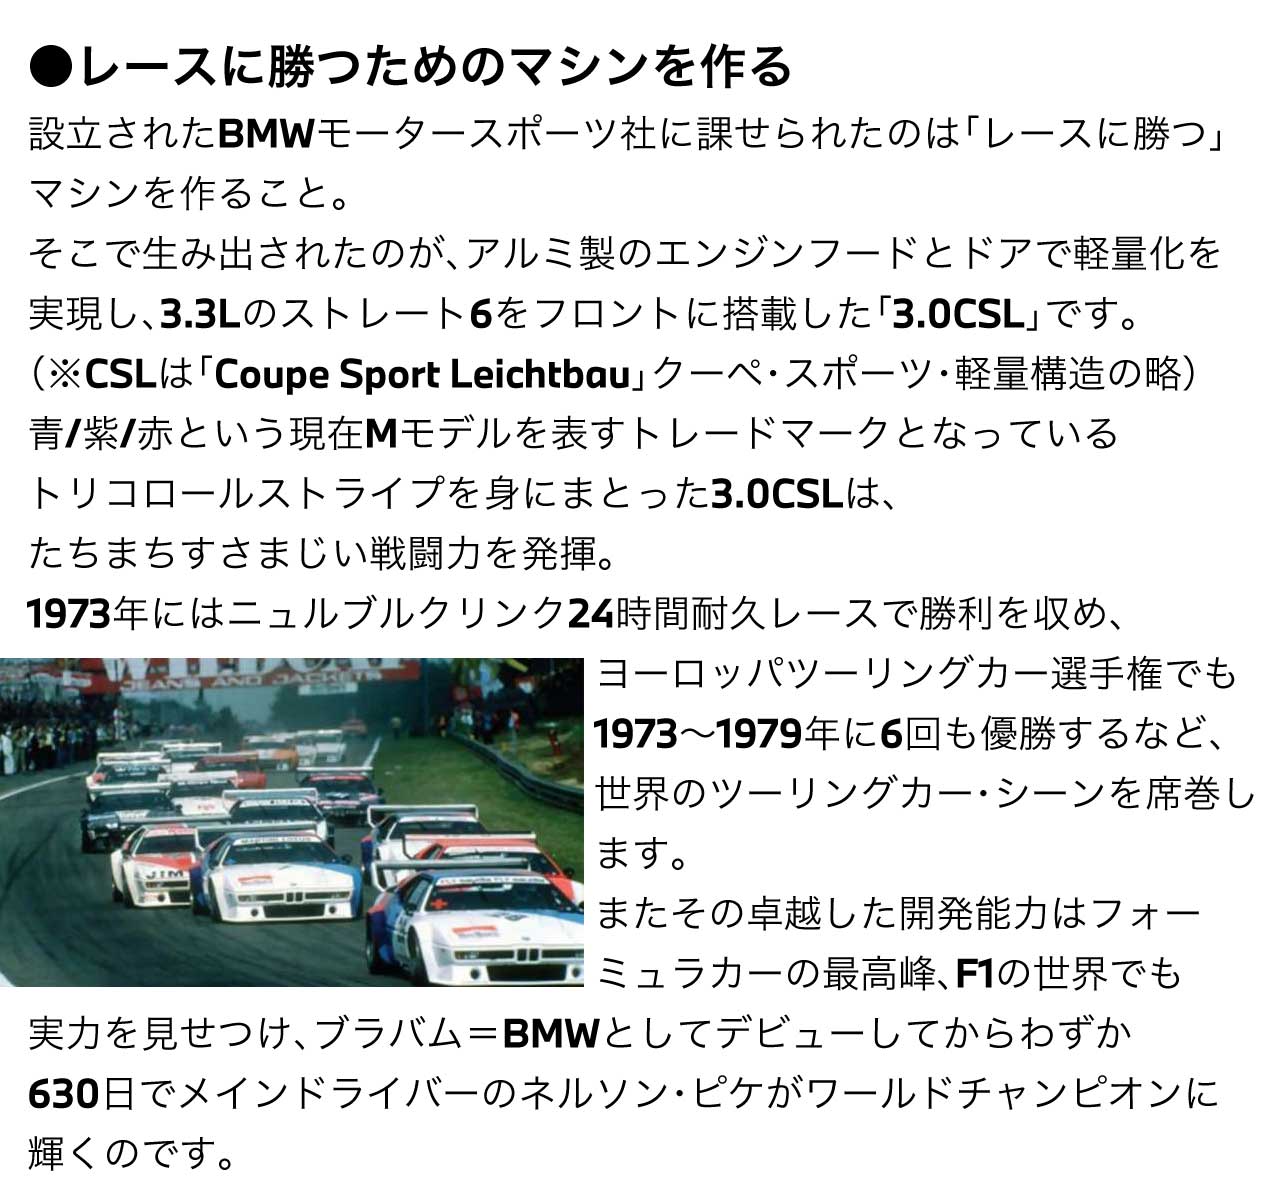 レースに勝つためのマシンを作る 設立されたBMWモータースポーツ社に課せられたのは「レースに勝つ」マシンを作ること。そこで生み出されたのが、アルミ製のエンジンフードとドアで軽量化を実現し、3.3Lのストレート6をフロントに搭載した「3.0CSL」です。（※CSLは「Coupe Sport Leichtbau」クーペ・スポーツ・軽量構造の略）青/紫/赤という現在Mモデルを表すトレードマークとなっているトリコロールストライプを身にまとった3.0CSLは、たちまちすさまじい戦闘力を発揮。1973年にはニュルブルクリンク24時間耐久レースで勝利を収め、ヨーロッパツーリングカー選手権でも1973～1979年に6回も優勝するなど、世界のツーリングカー・シーンを席巻します。またその卓越した開発能力はフォーミュラカーの最高峰、F1の世界でも実力を見せつけ、ブラバム＝BMWとしてデビューしてからわずか630日でメインドライバーの ネルソン・ピケ がワールドチャンピオンに輝くのです。